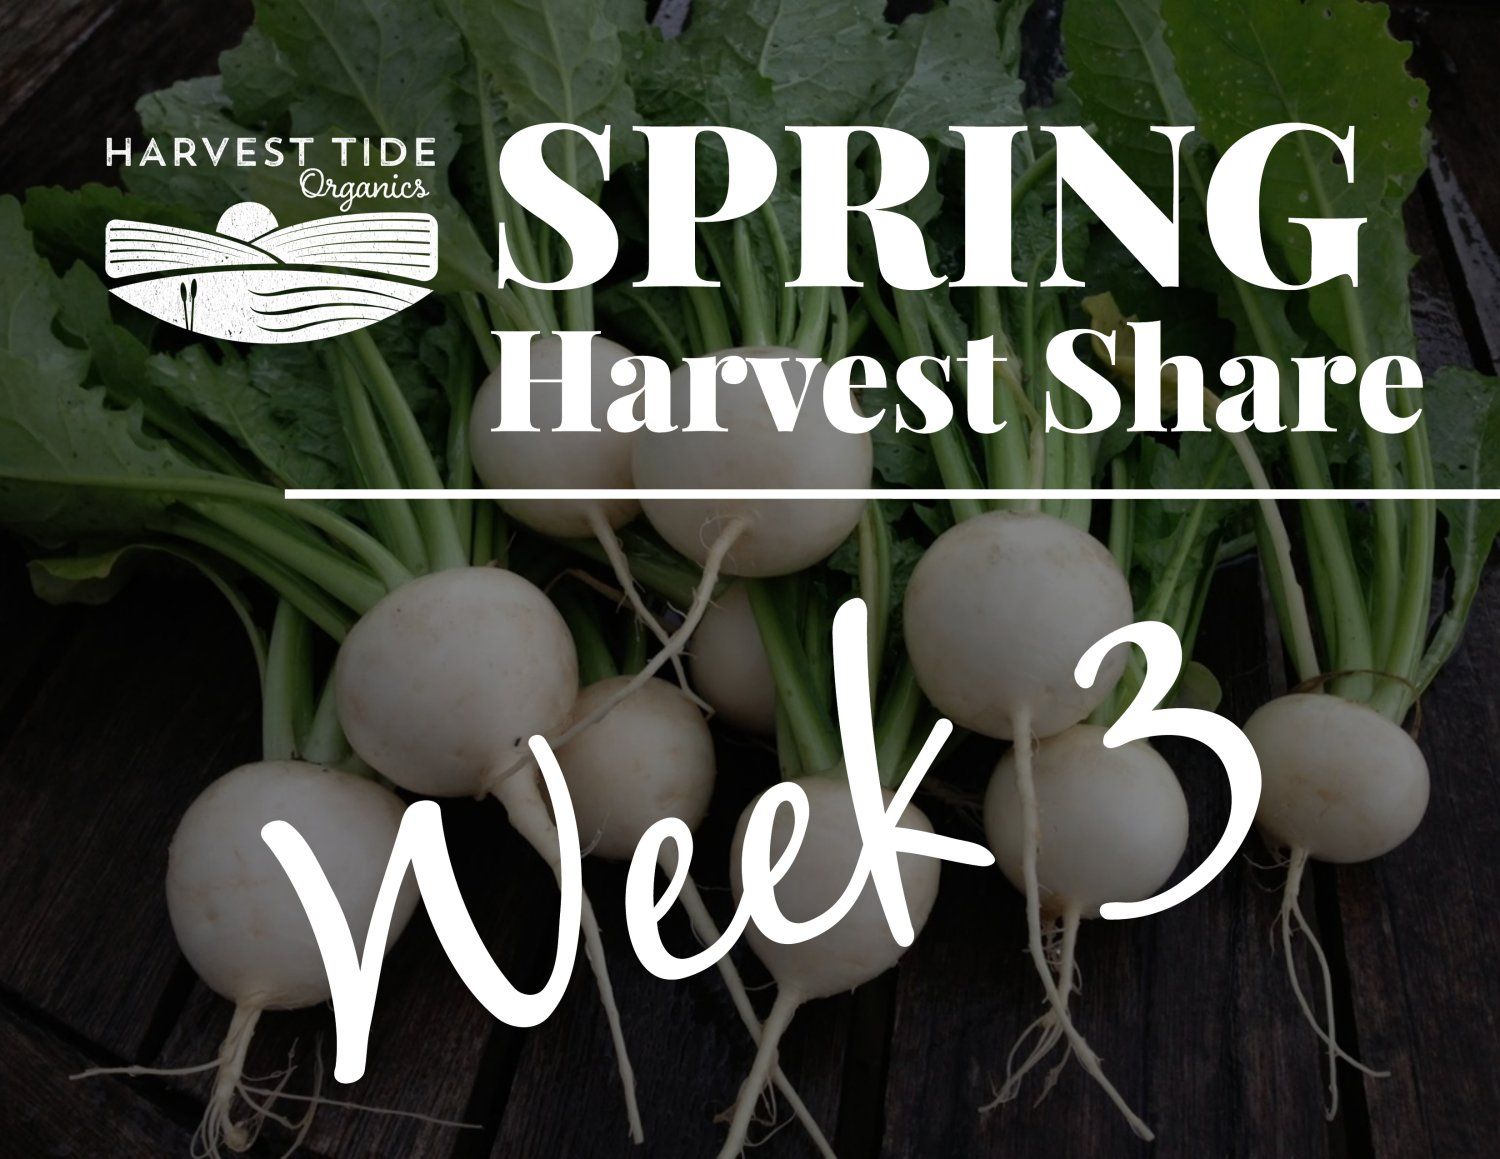 Next Happening: Spring Harvest Share - Week 3